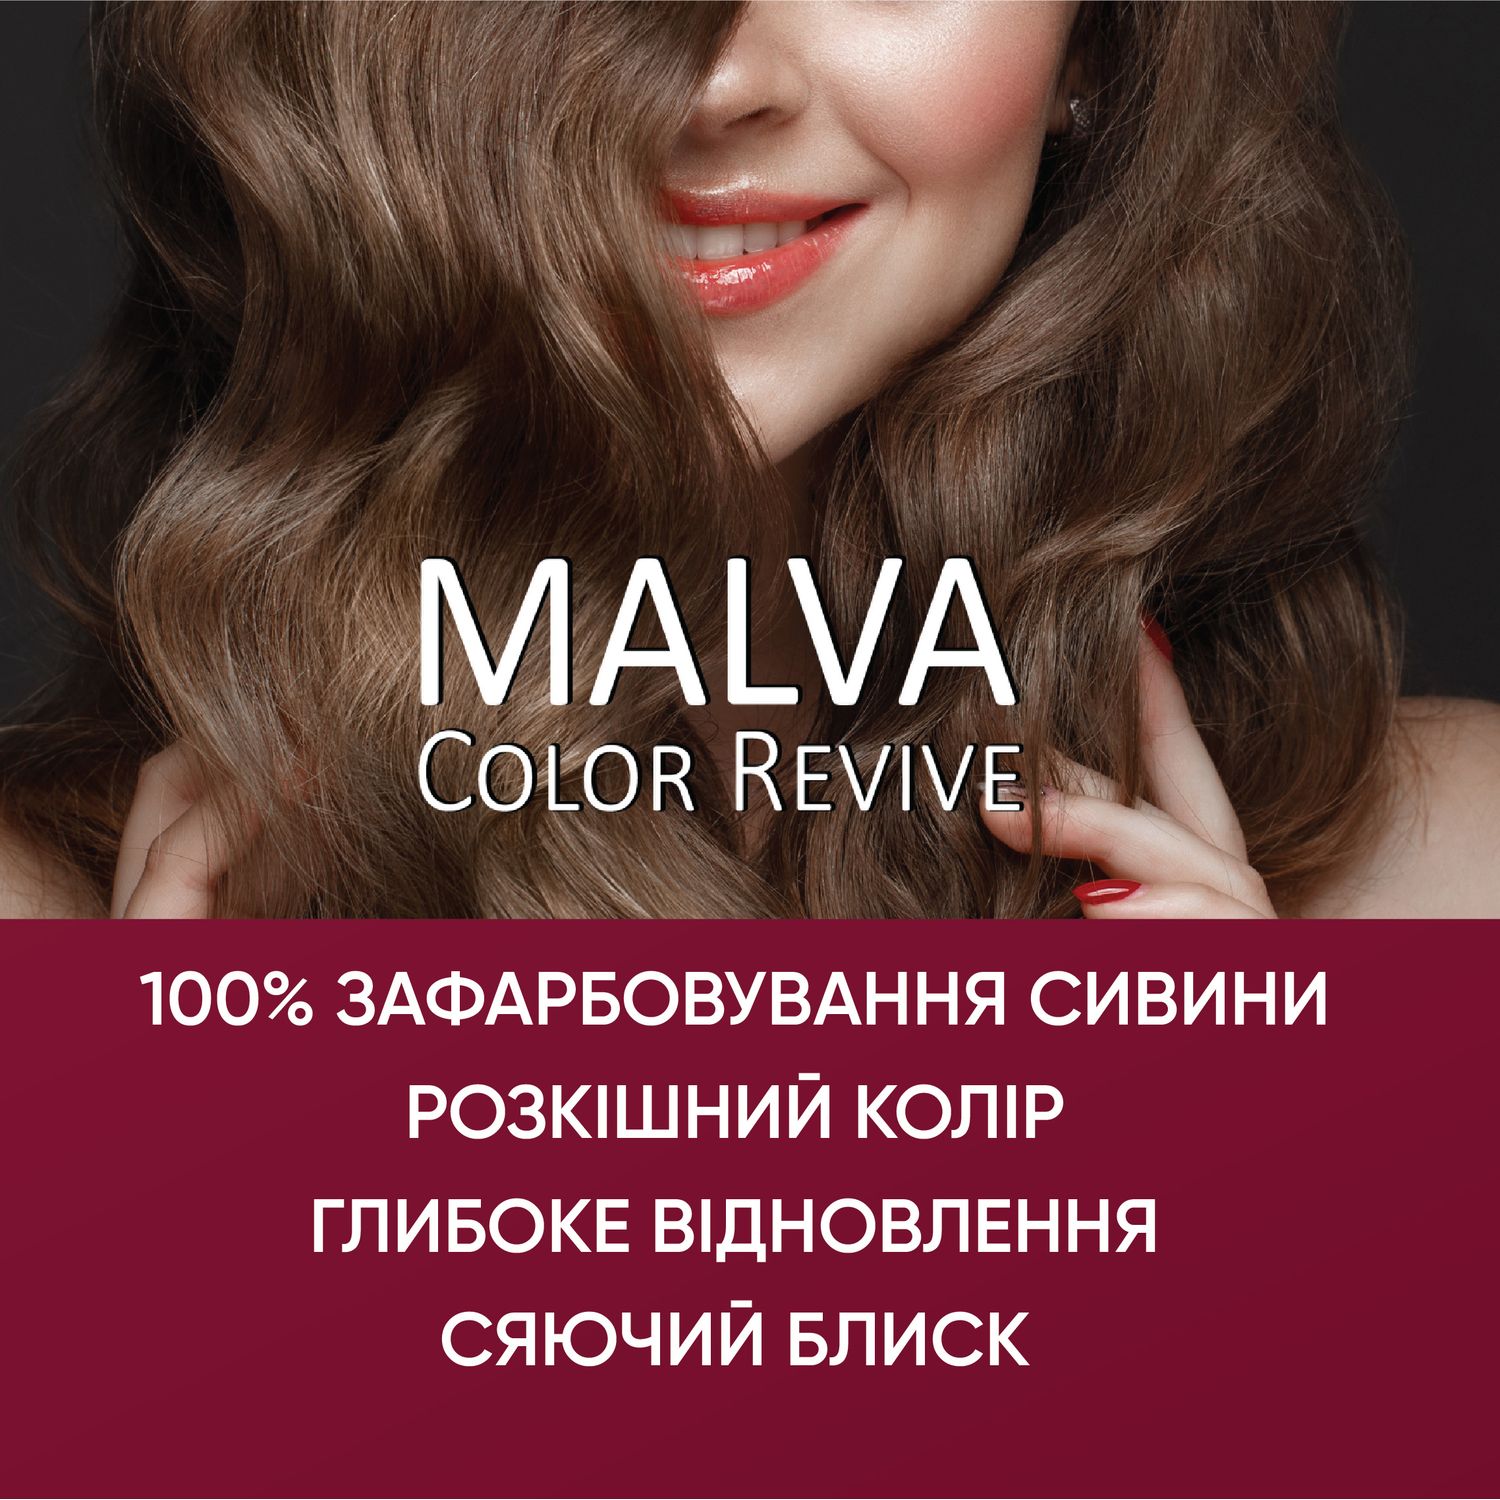 Устойчивая крем-краска для волос Malva Color Revive оттенок 034 Дикая вишня - фото 4